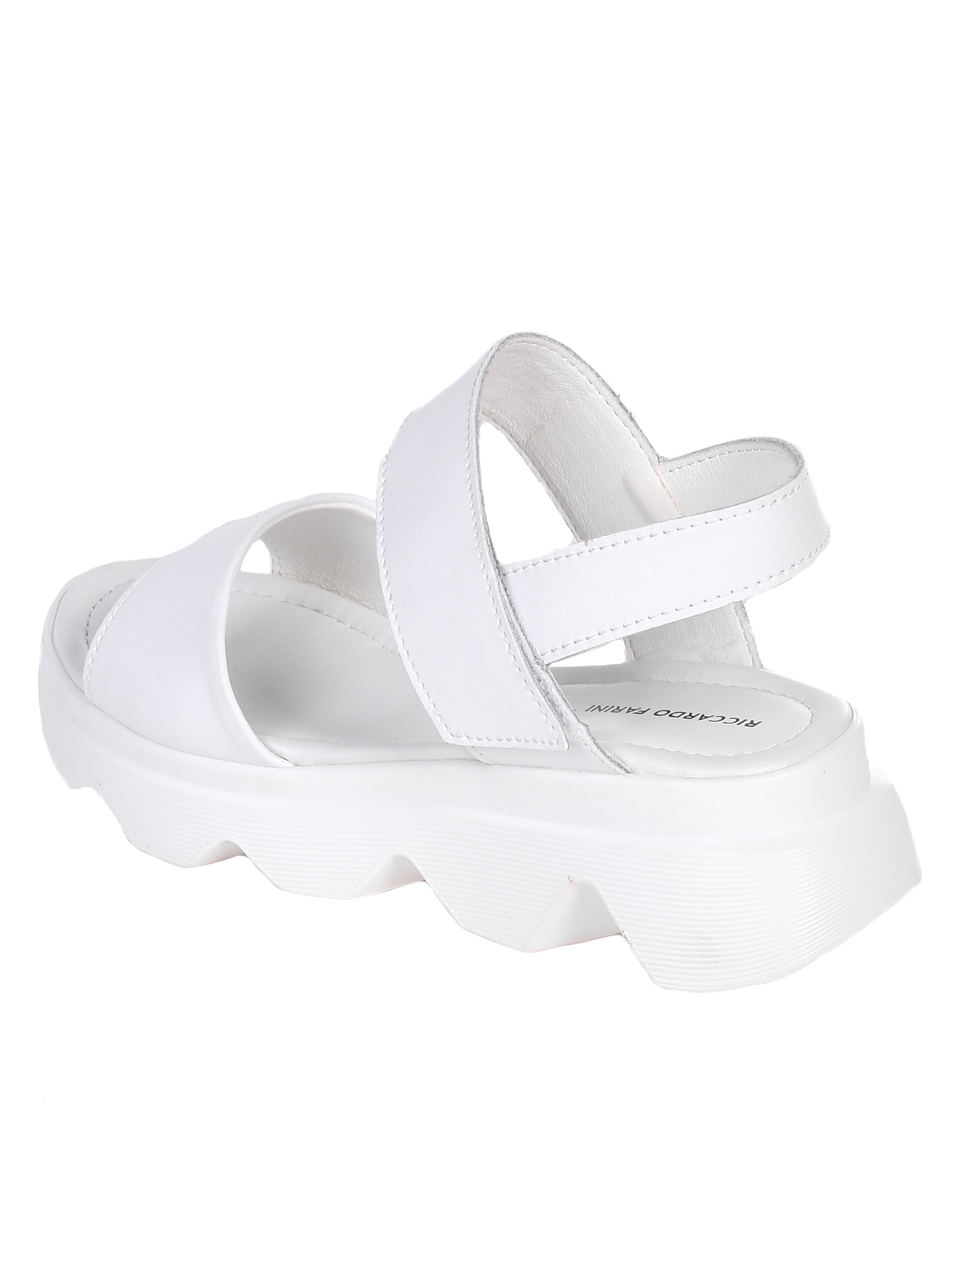 Ежедневни дамски сандали на платформа от естествена кожа 4AF-22259 white